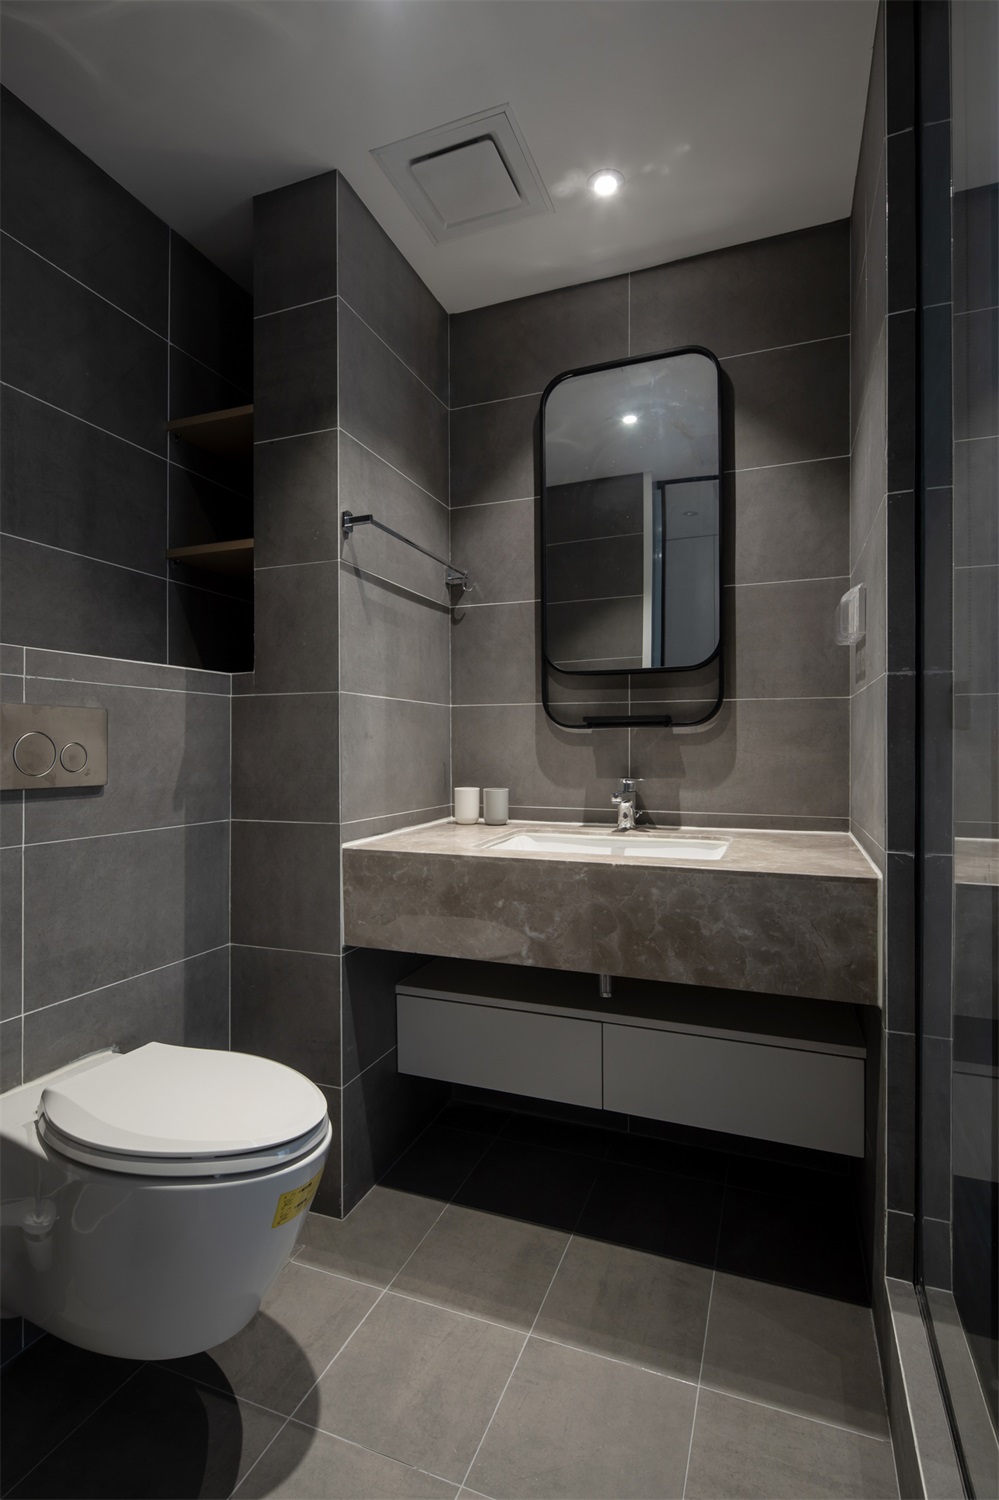 冷色调的卫浴空间动线设计流畅，采用干湿分离后空间显得更加富有层次。